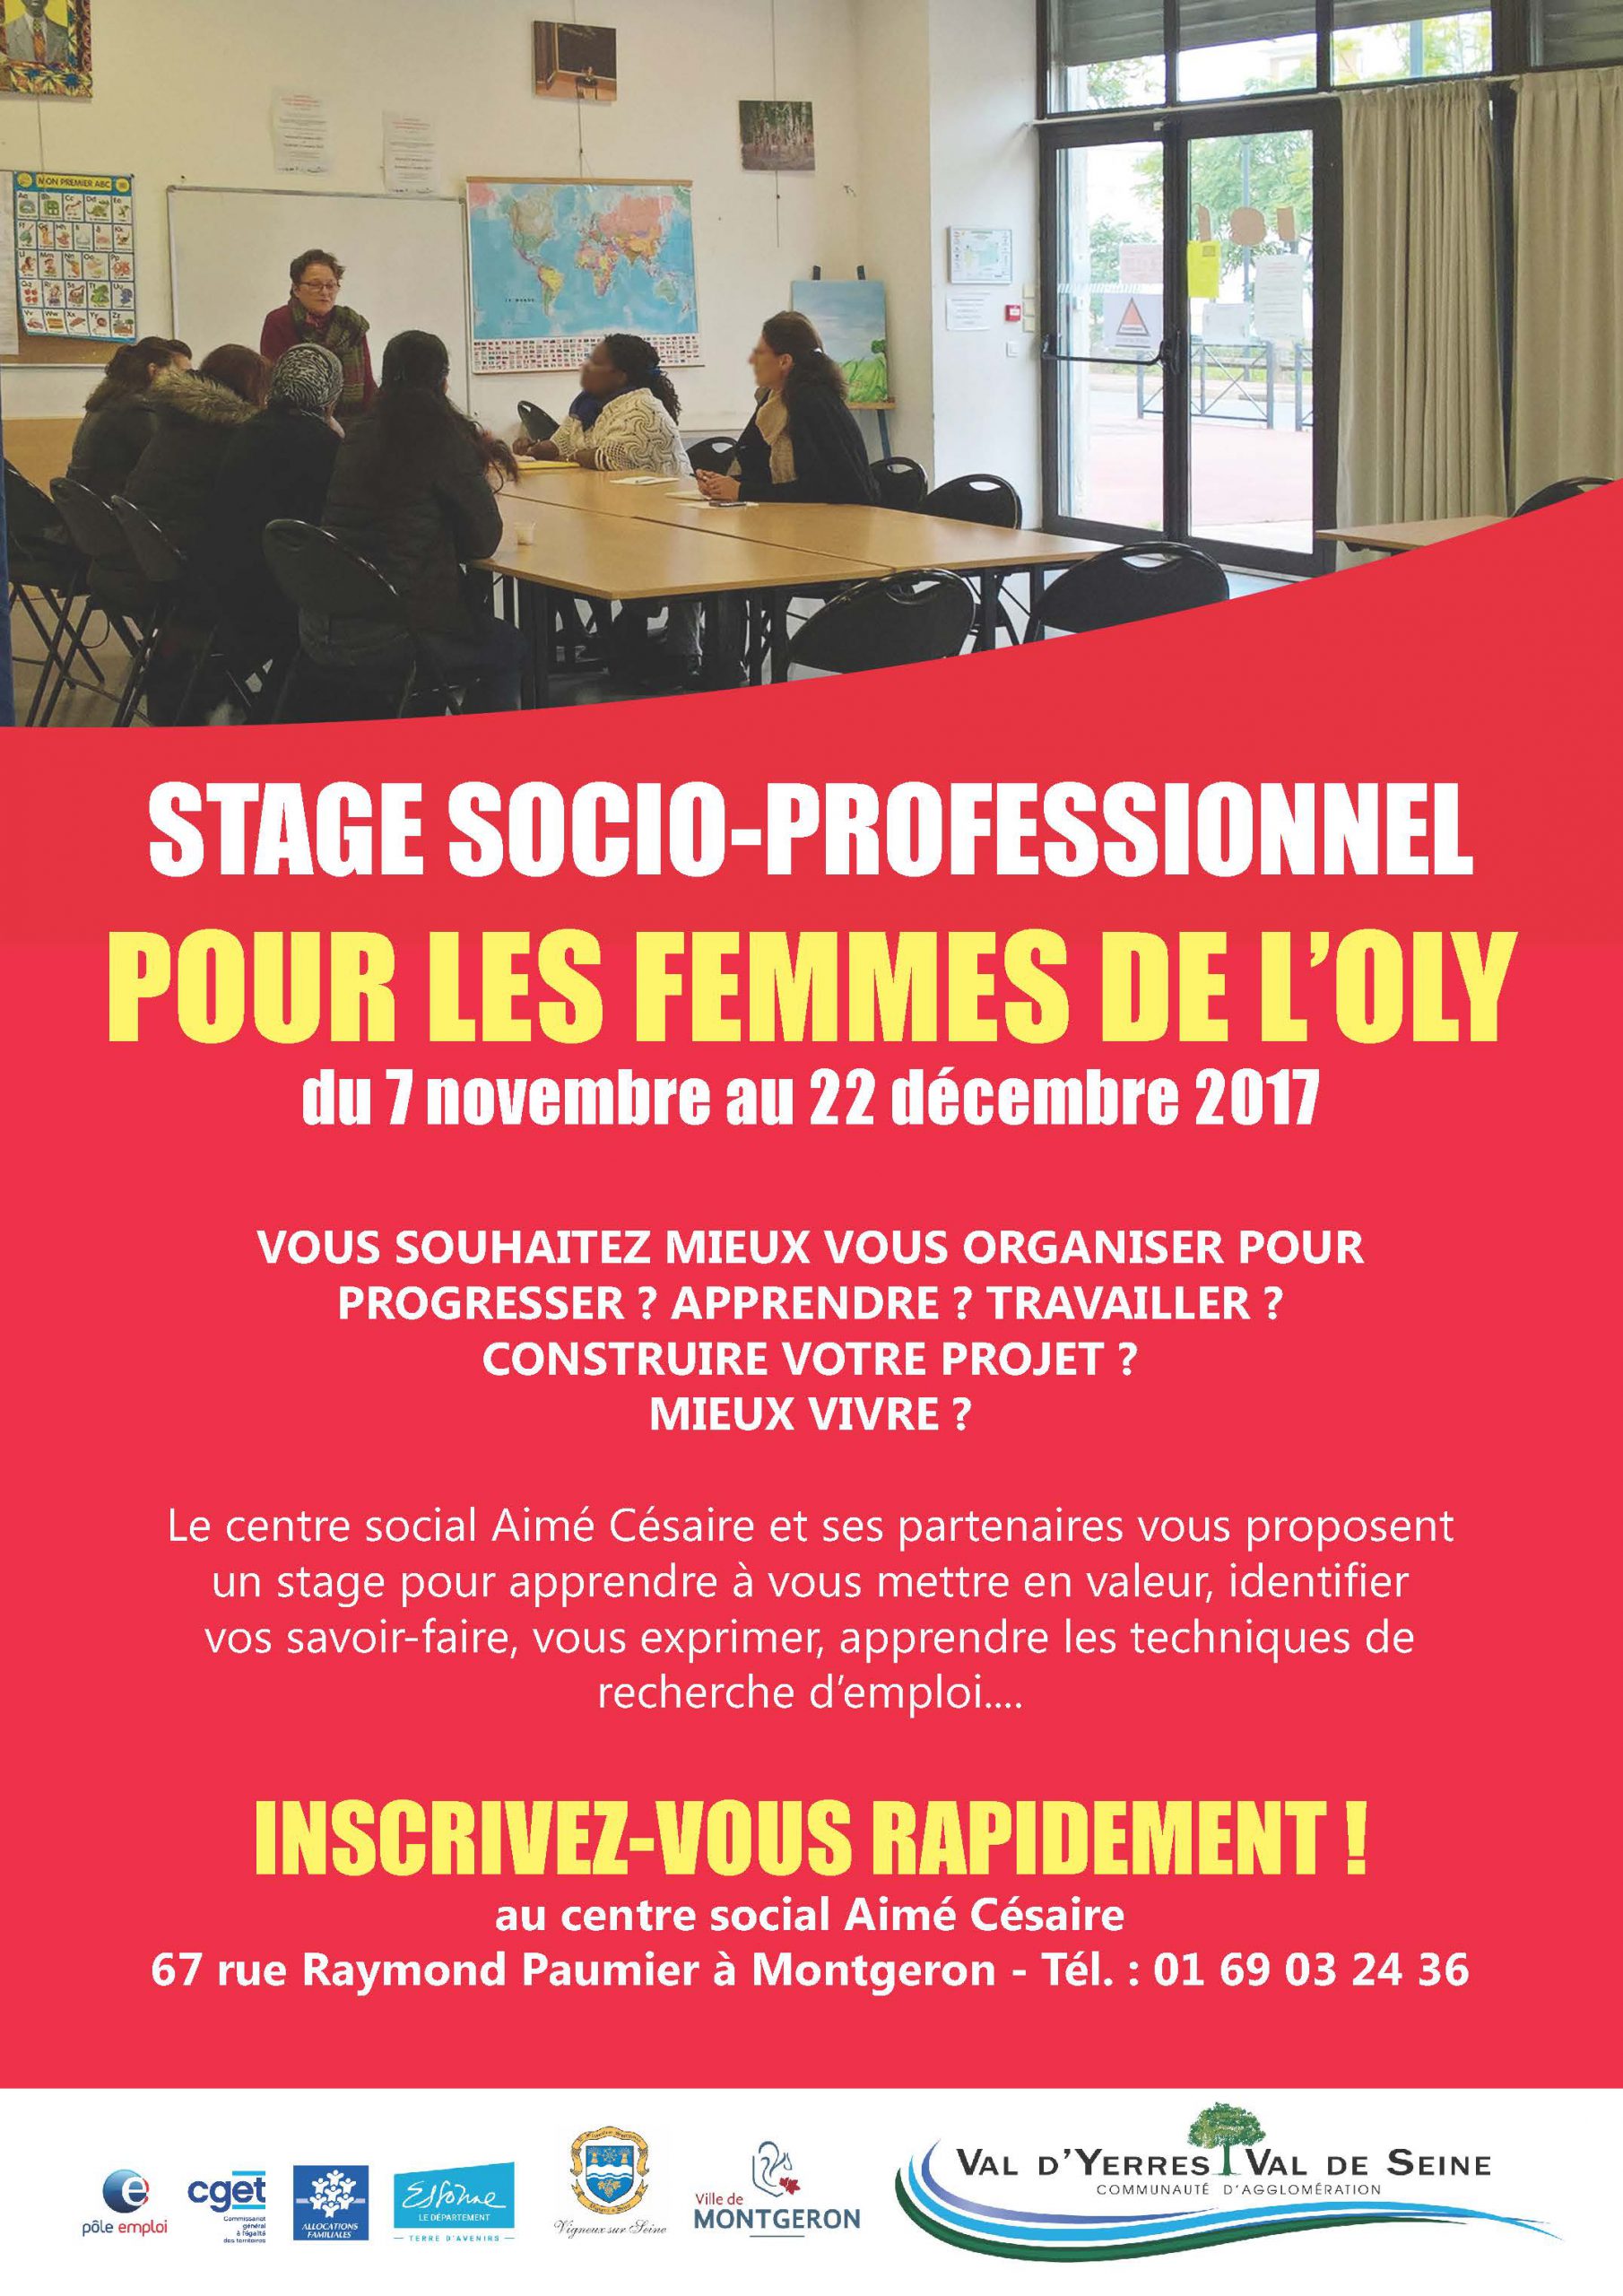 Stage socio-professionnel pour les femmes de l'Oly : du 7 novembre au 22 décembre